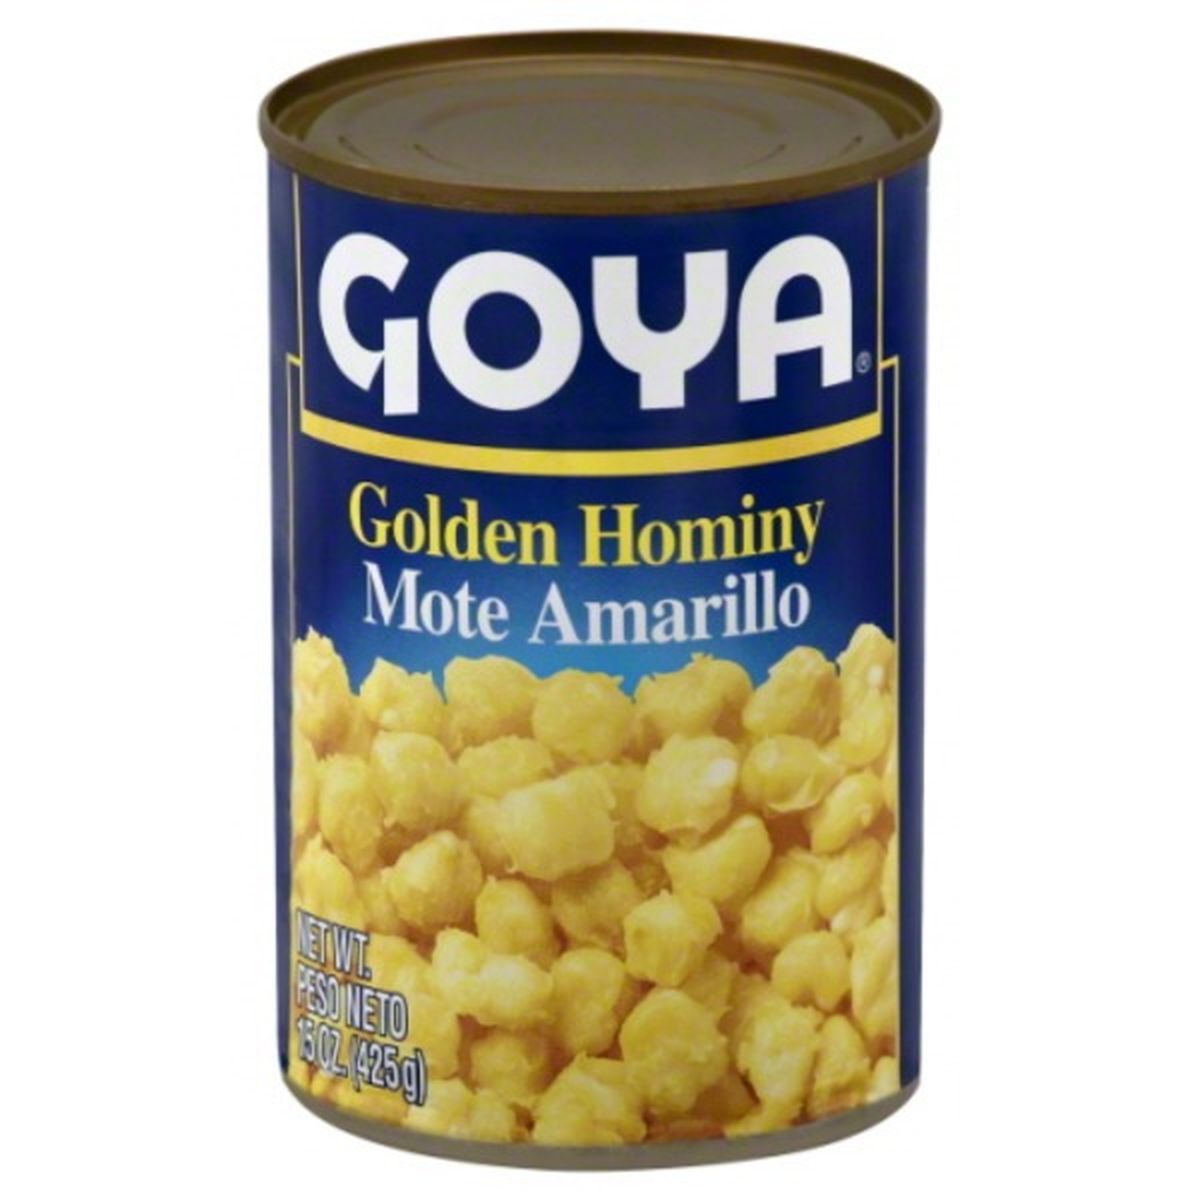 Calories in Goya Golden Hominy